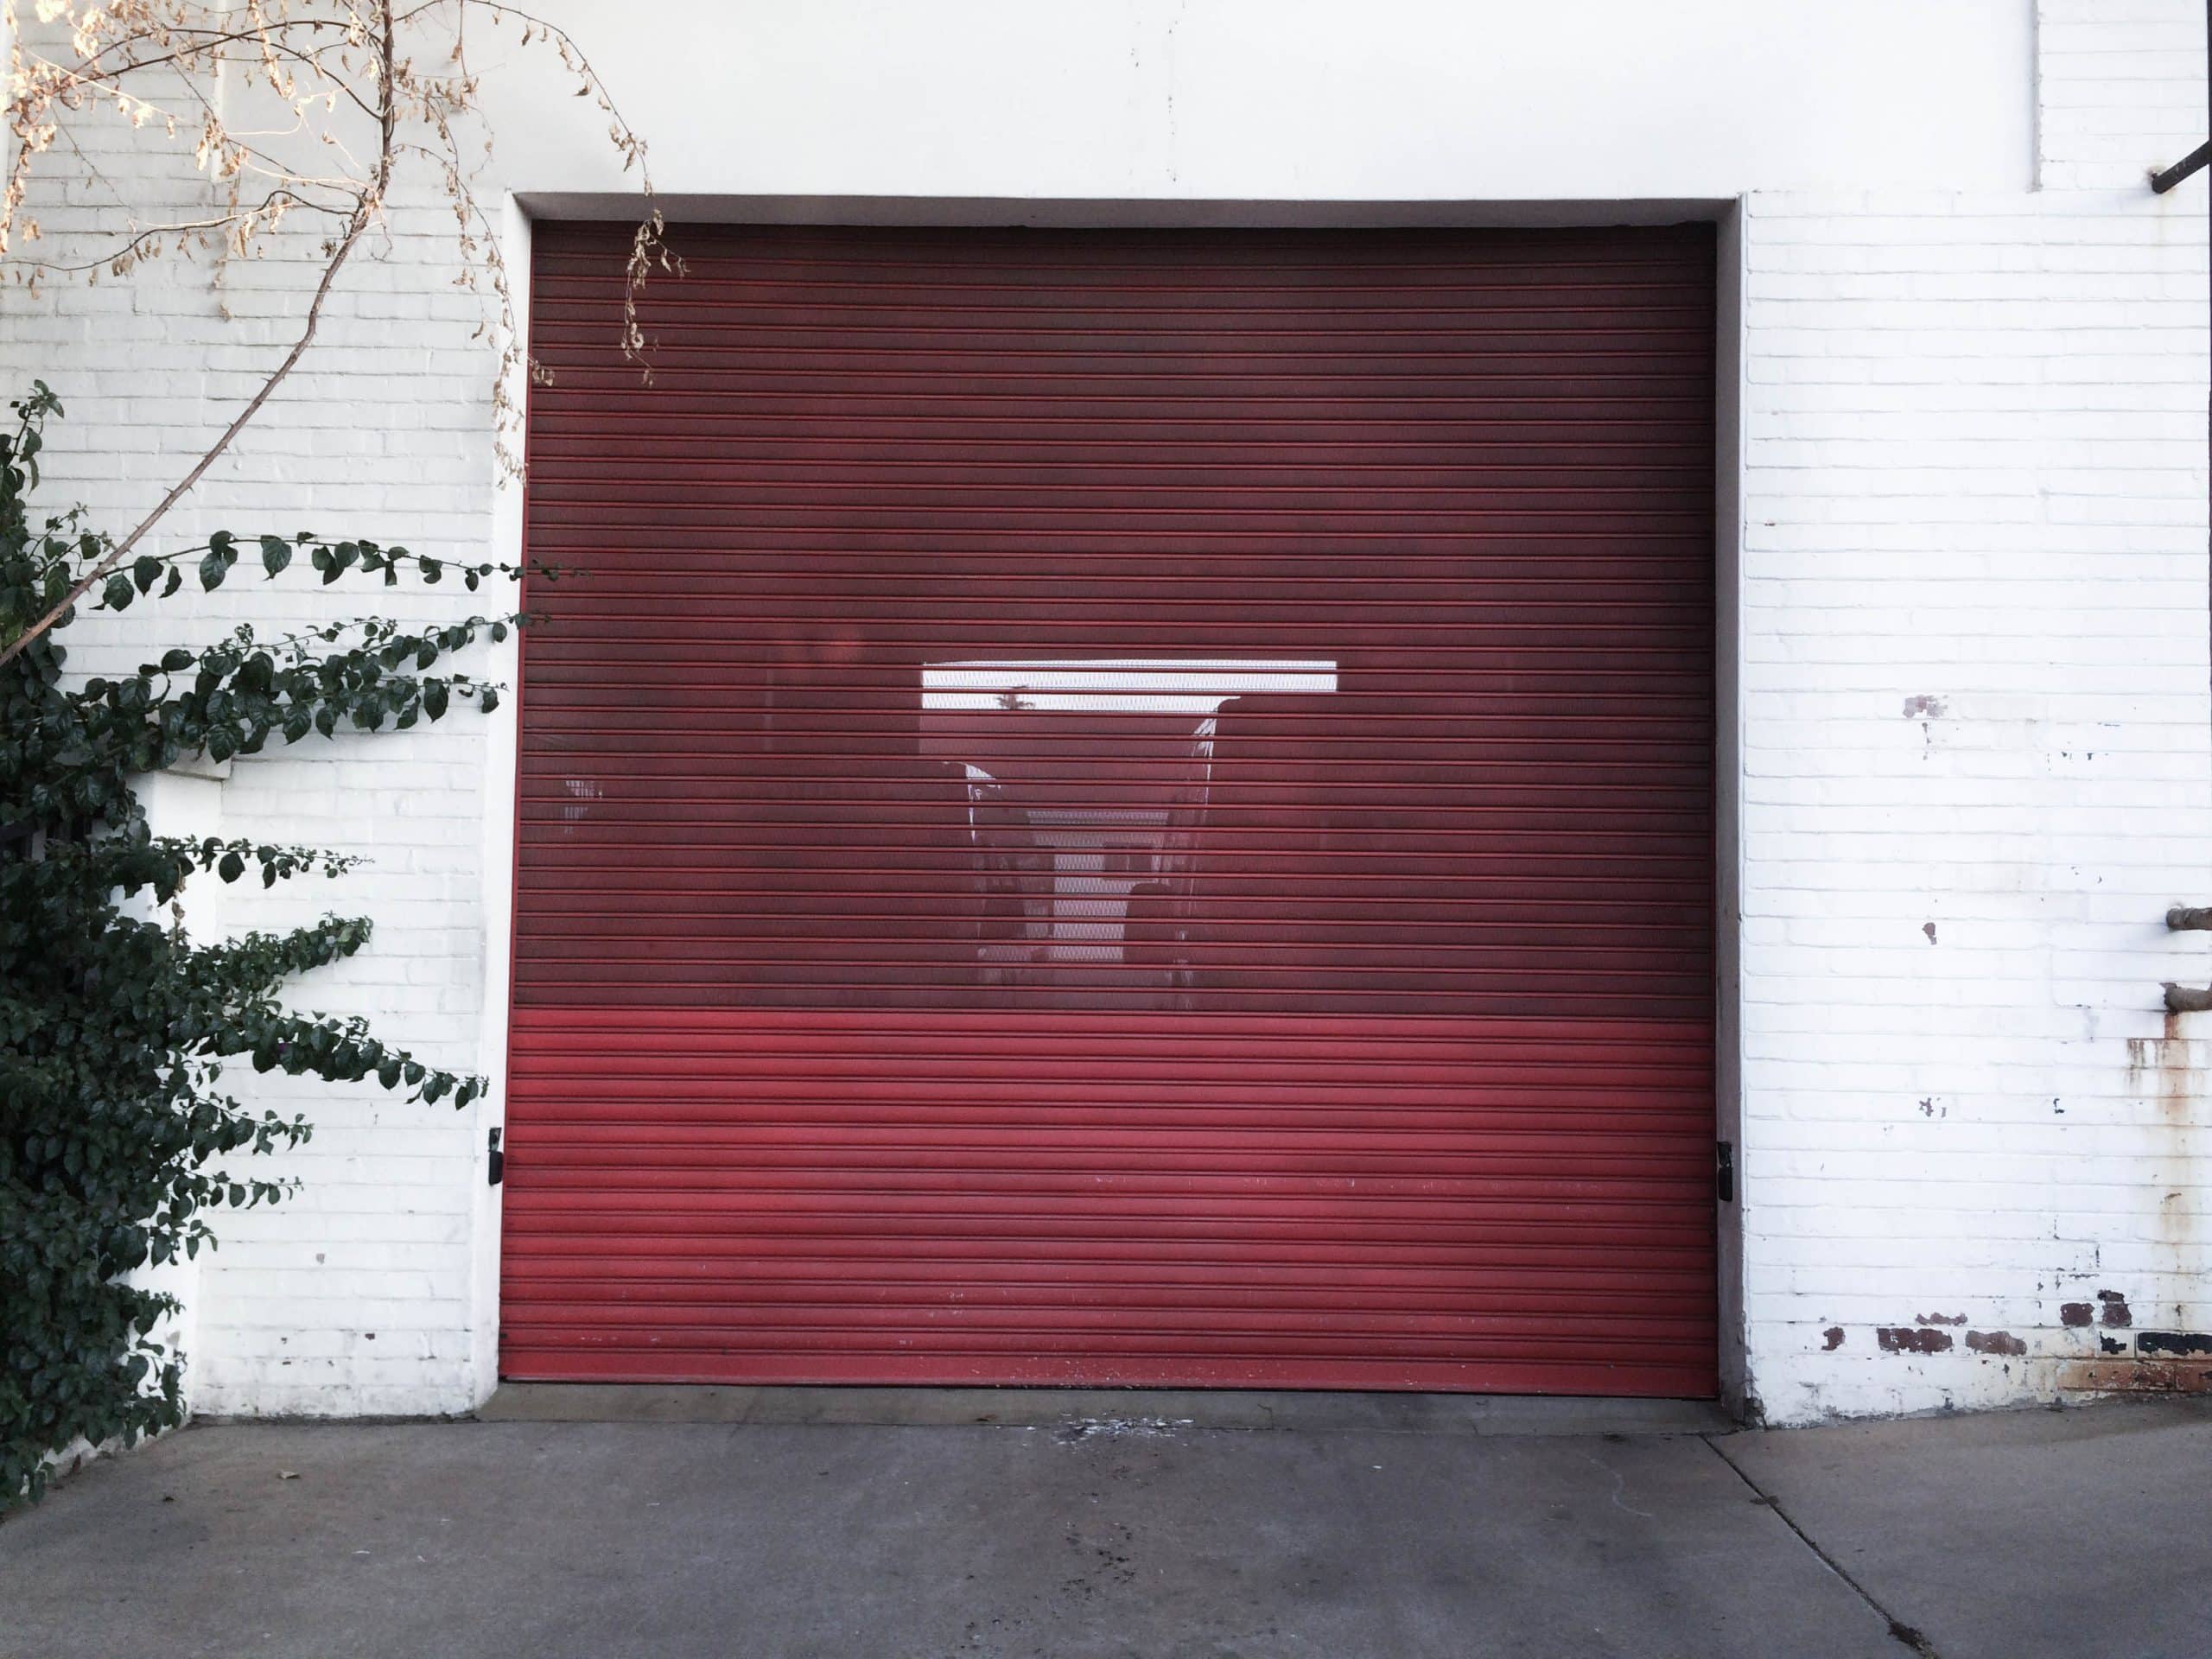 3 conseils infaillibles pour sécuriser son garage grâce aux équipements de surveillance